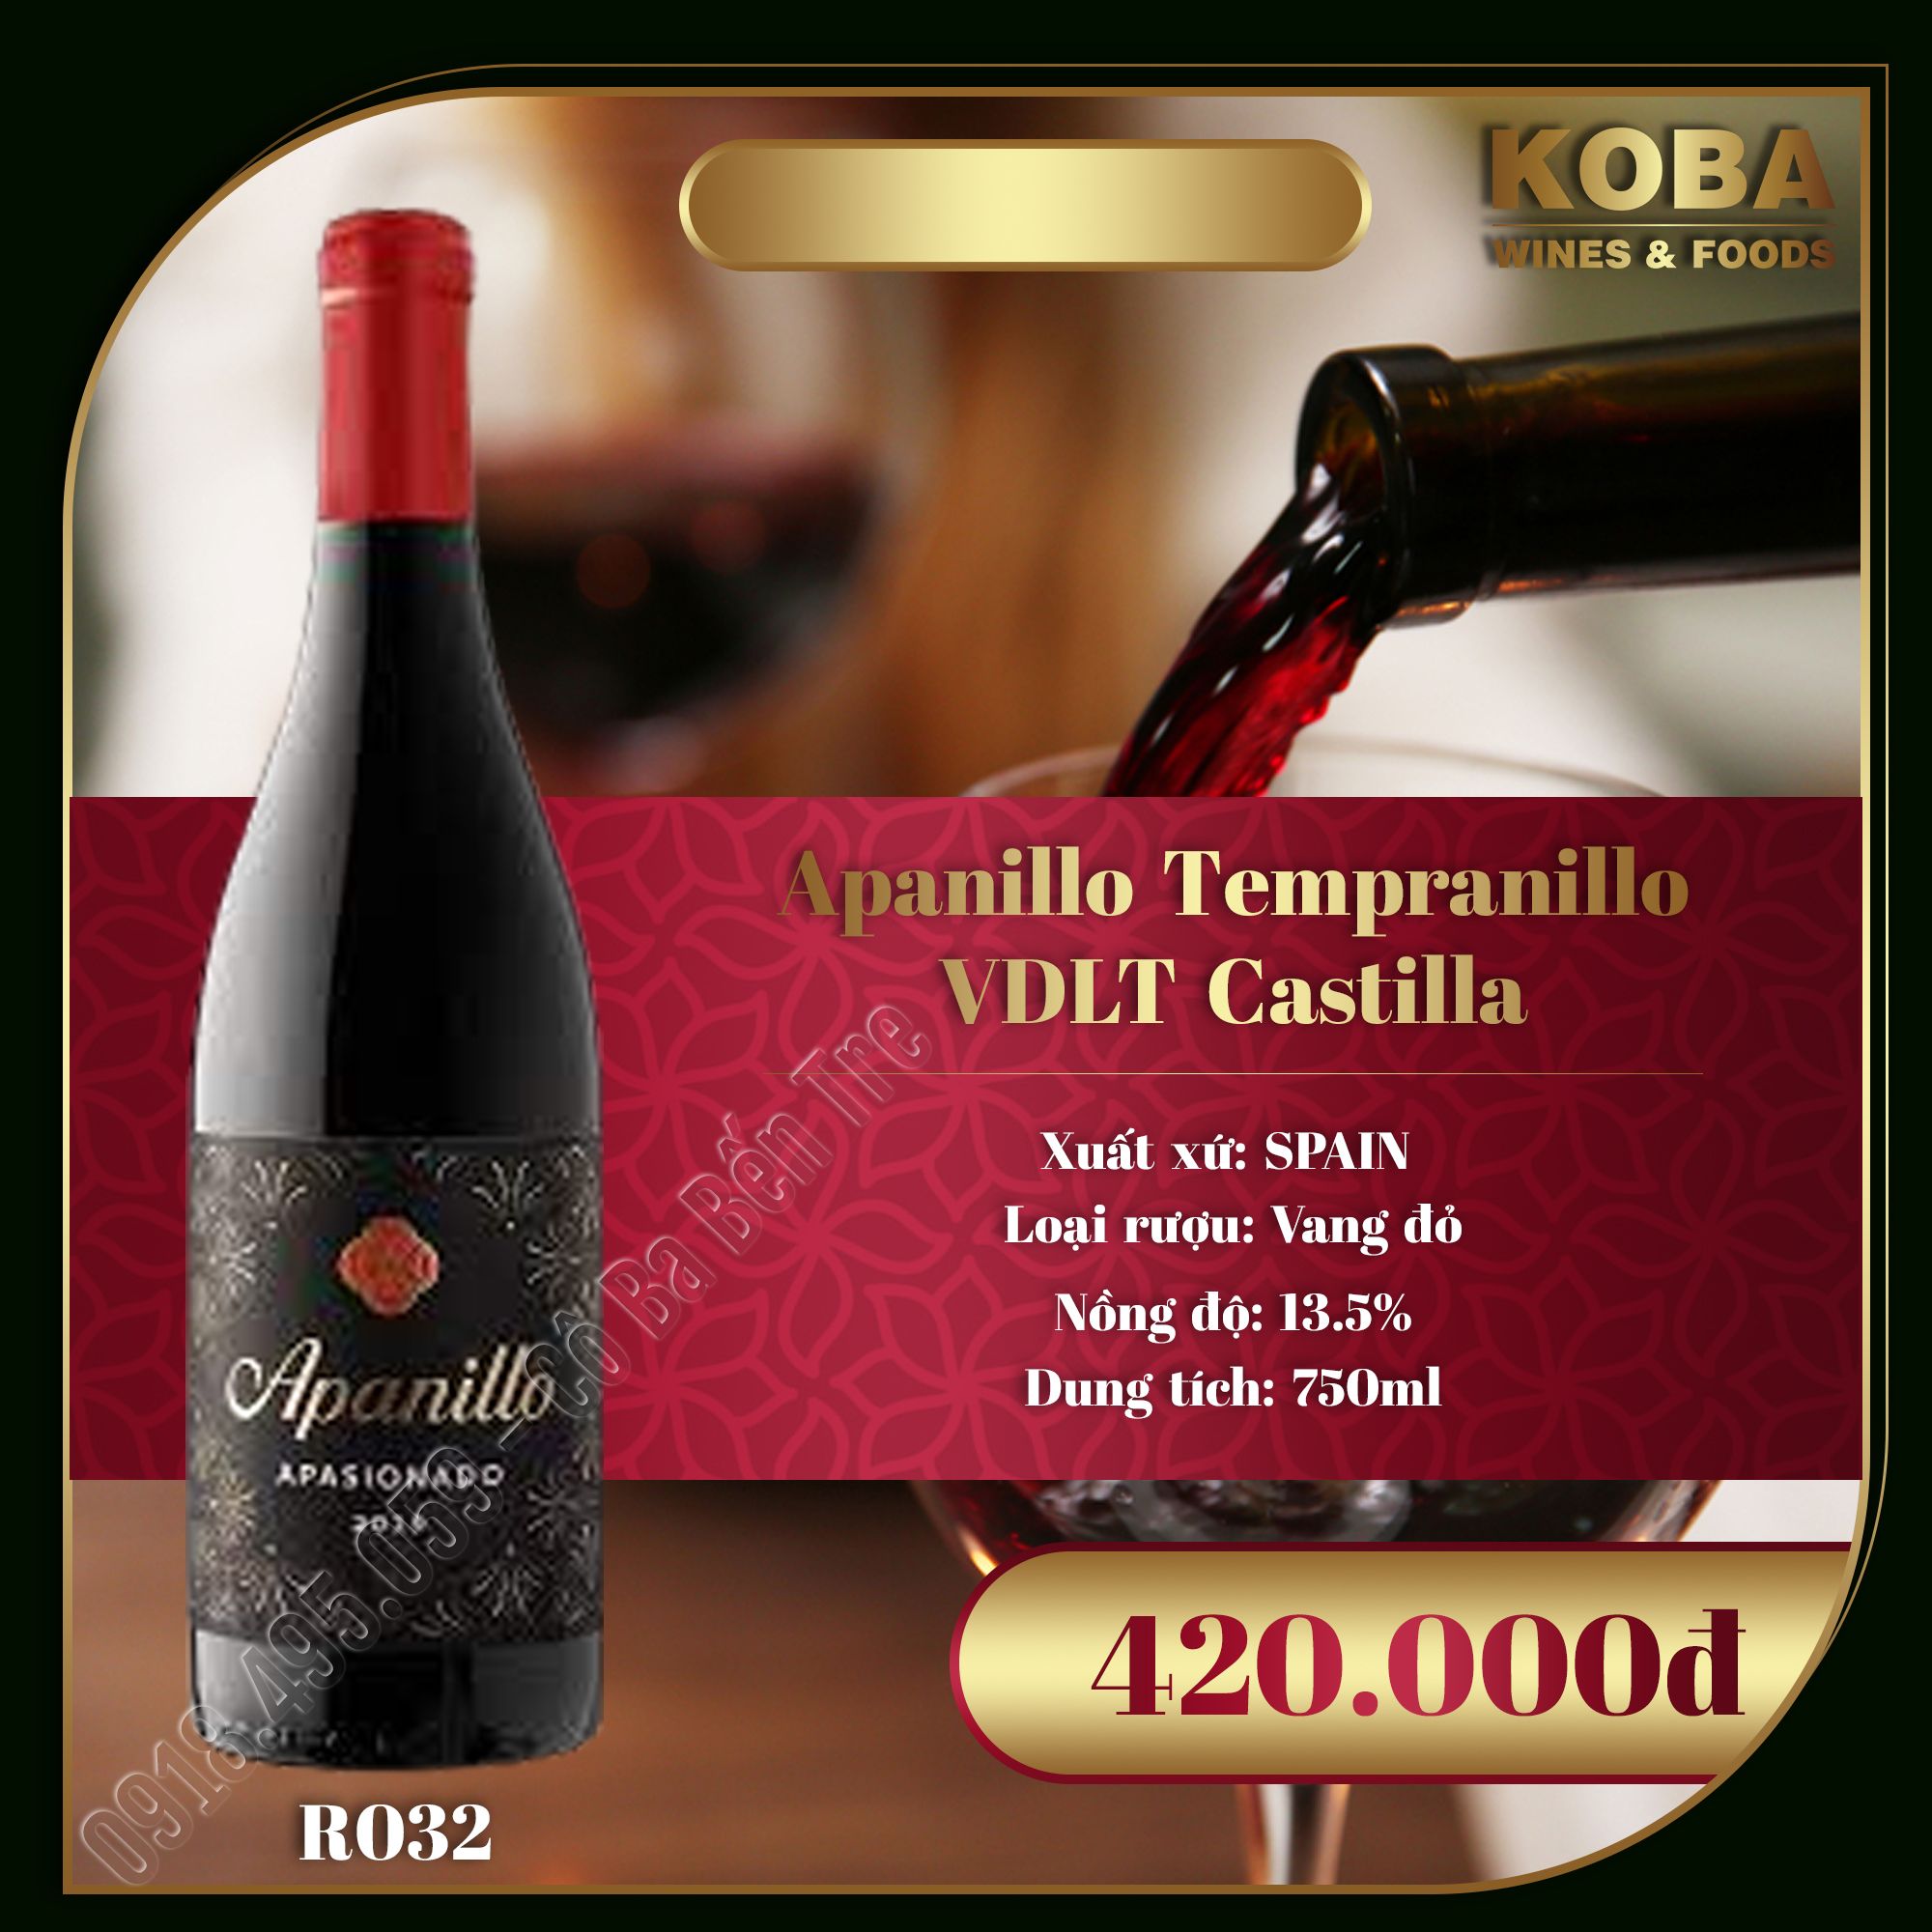 Rượu Vang Đỏ Spain - Apanillo Tempranillo VDLT Castilla - 13.5 độ